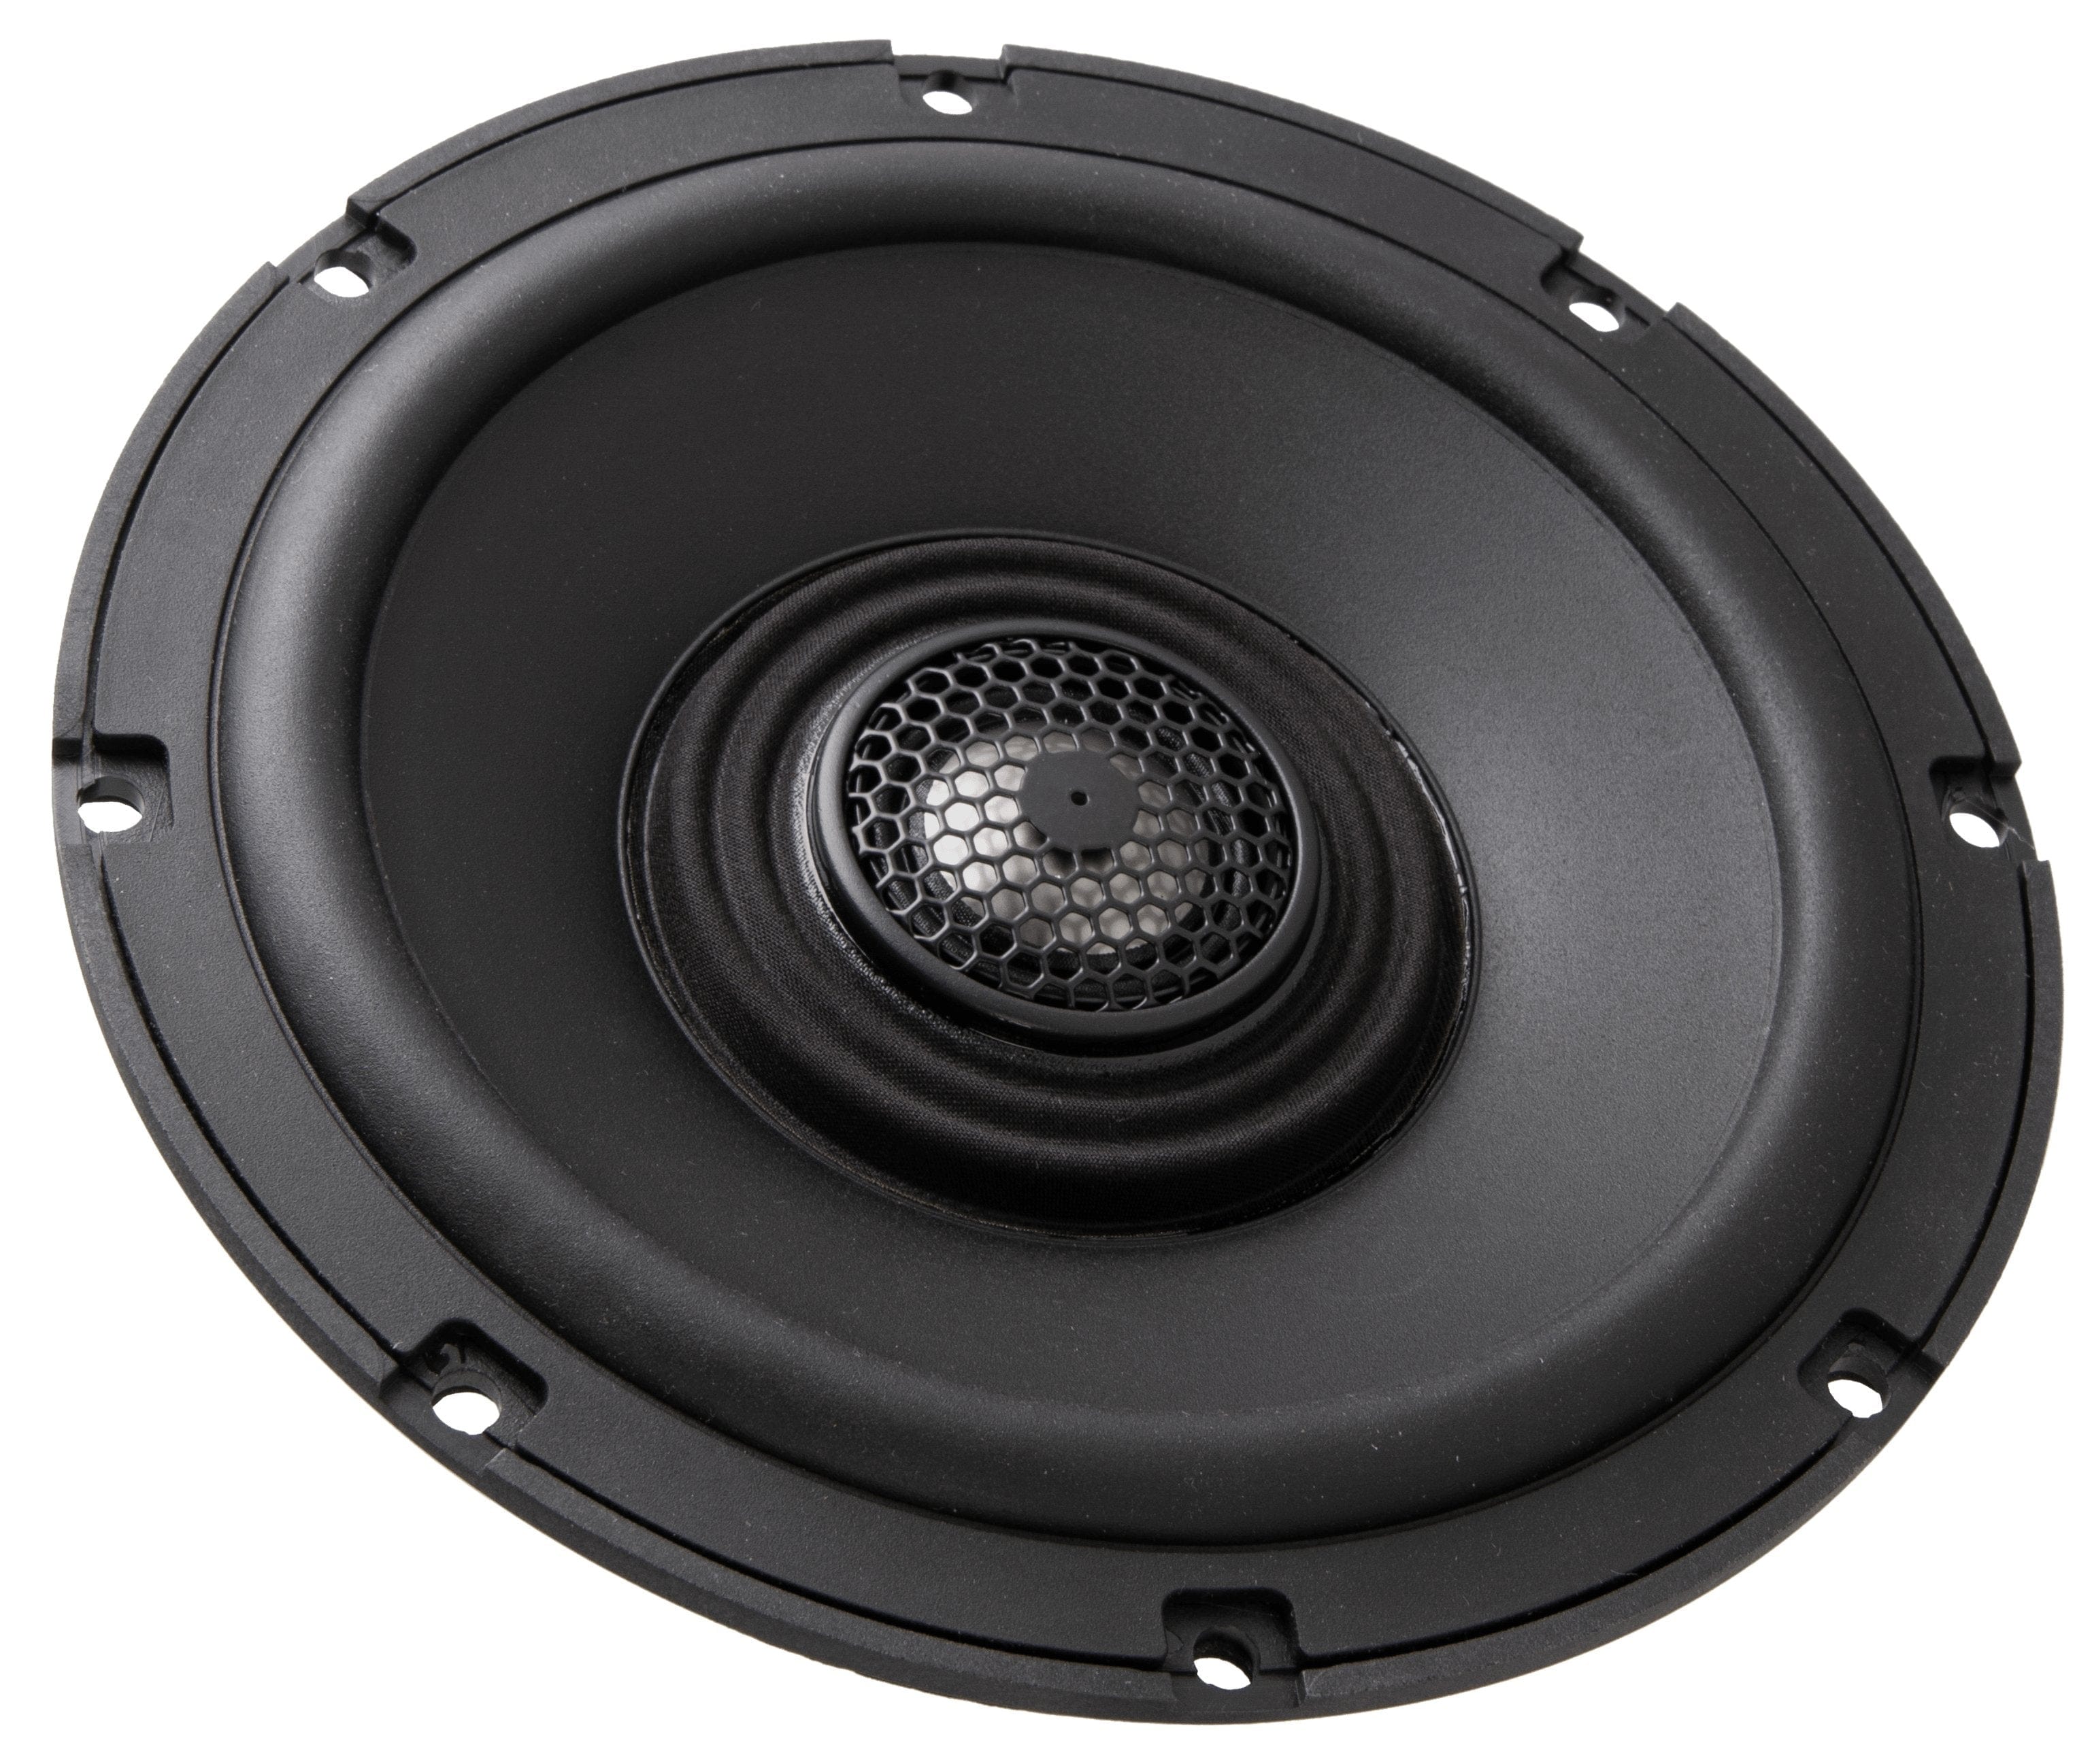 Soundstream Audio - Speakers Soundstream 6.5" (4Ω) Fairing Speaker Upgrade Kit for 2014+ HD Touring Models